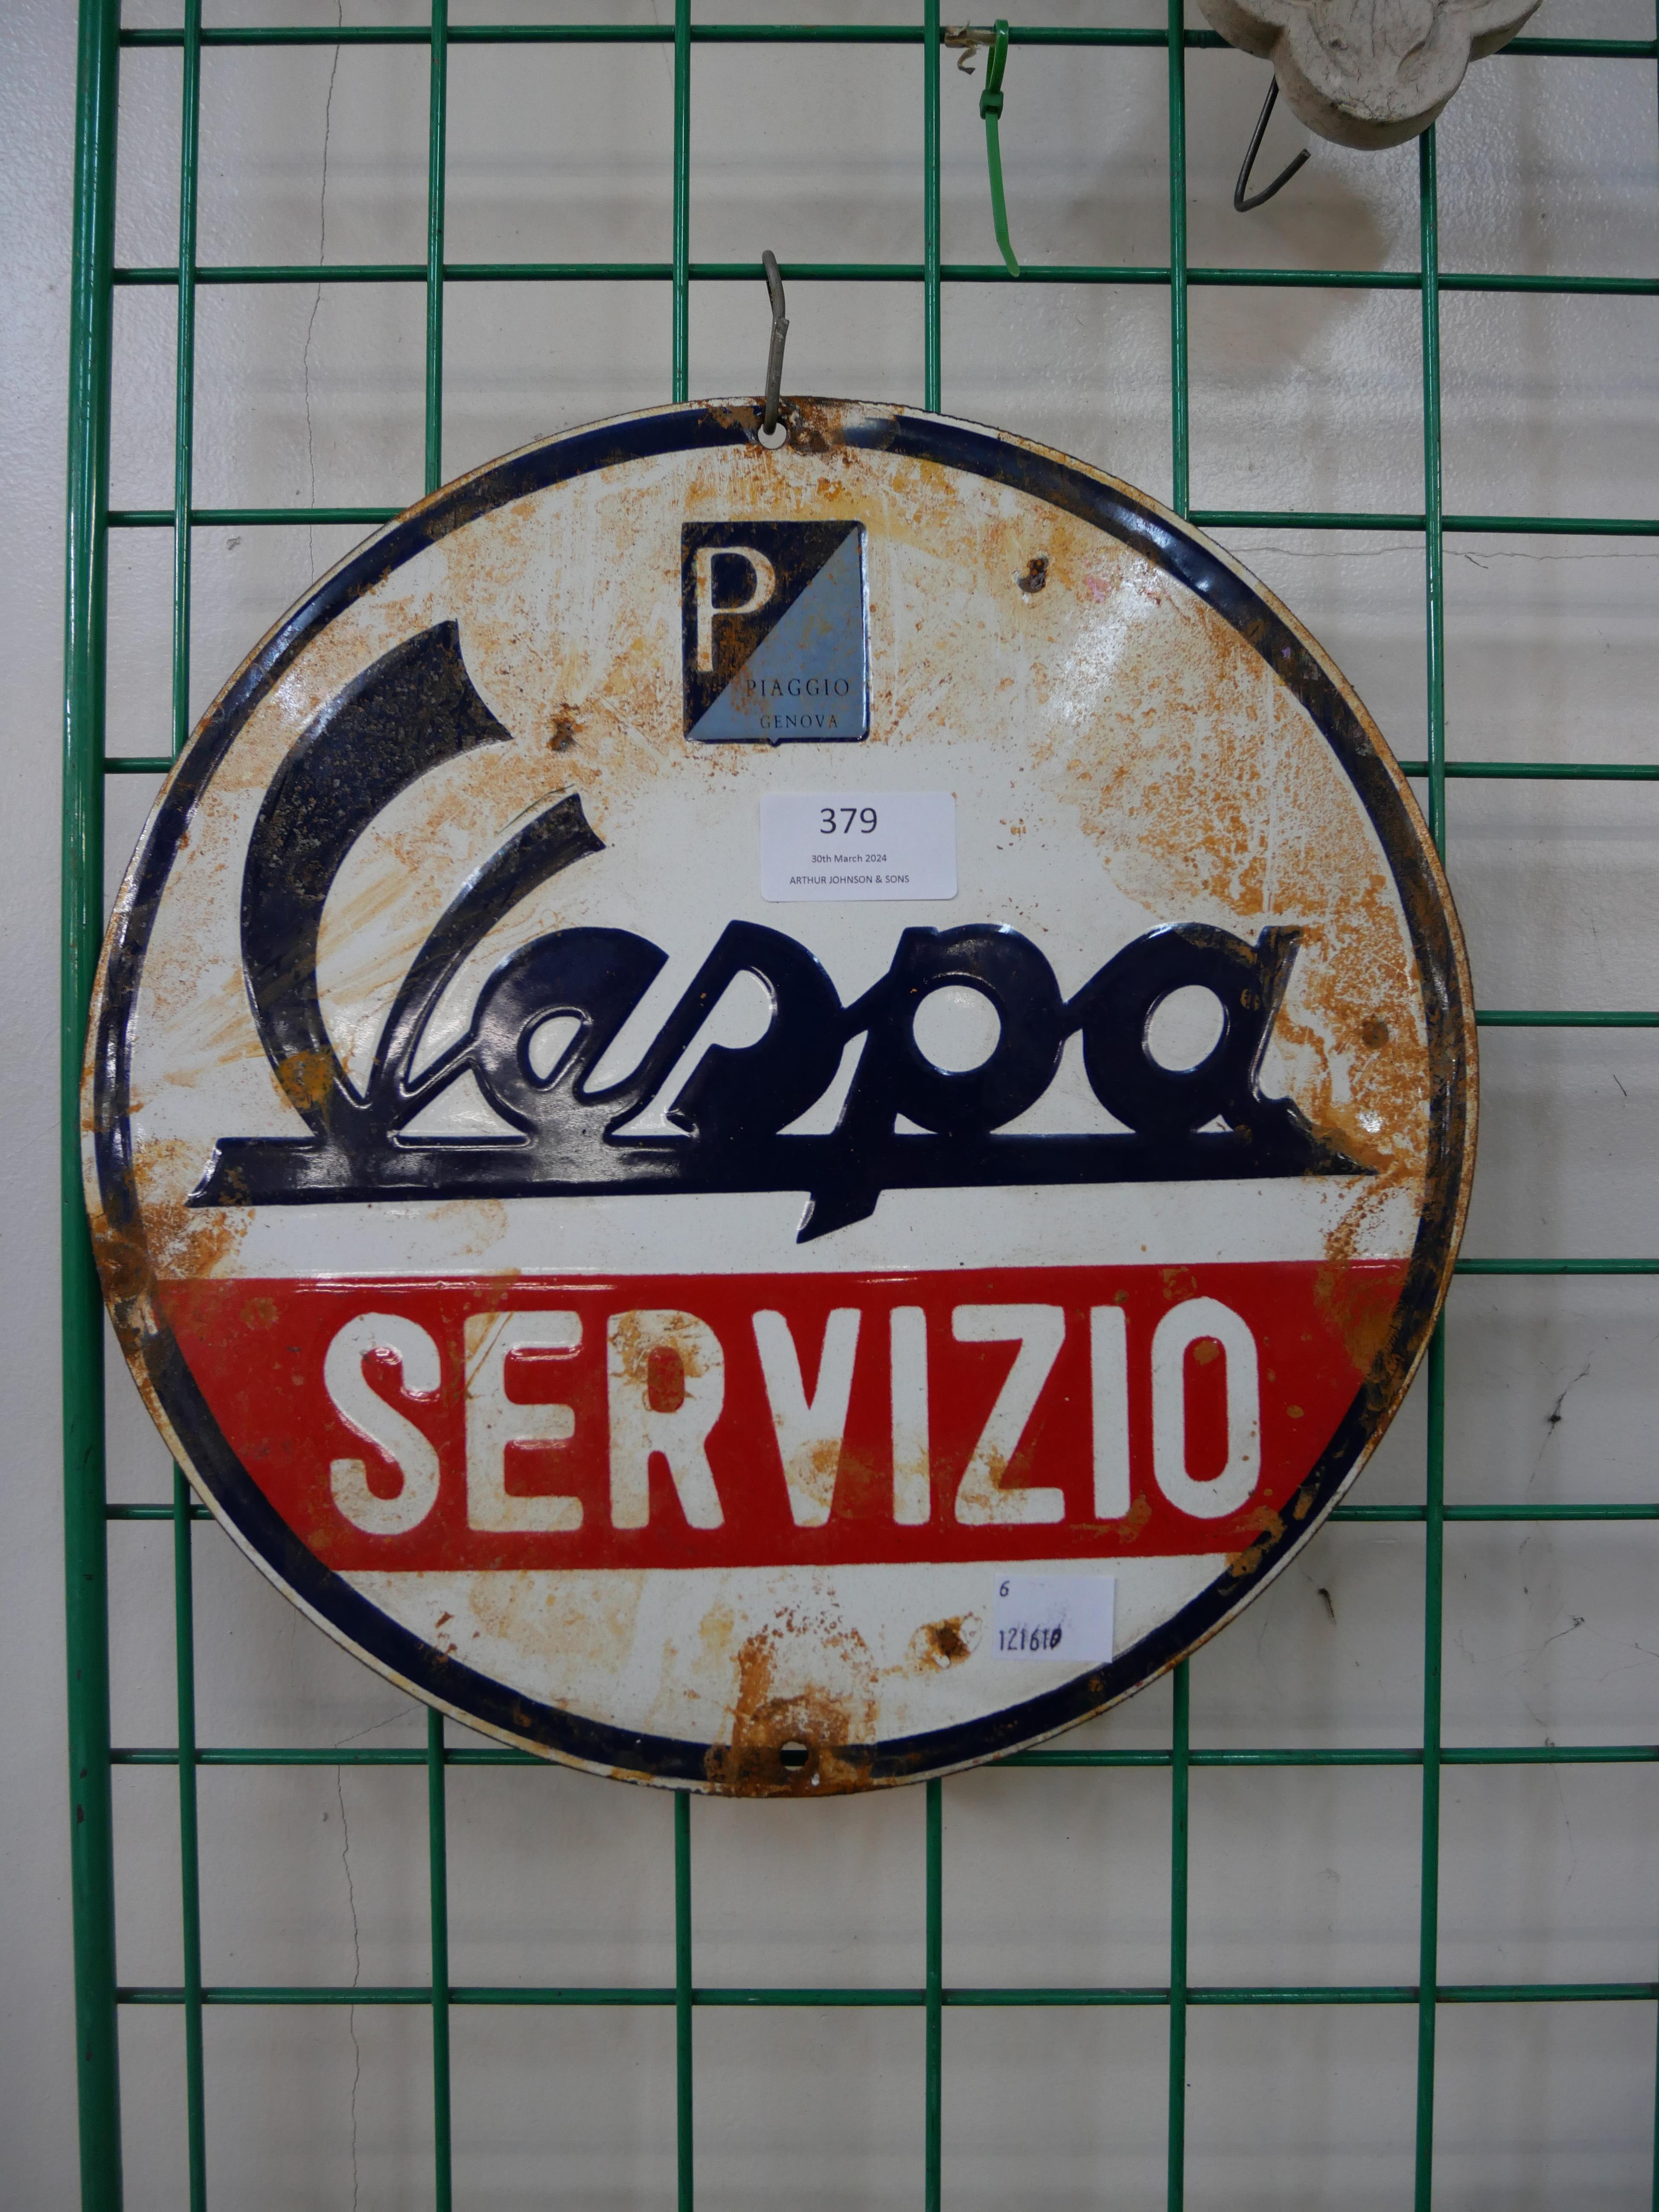 An enamelled metal Vespa advertising sign